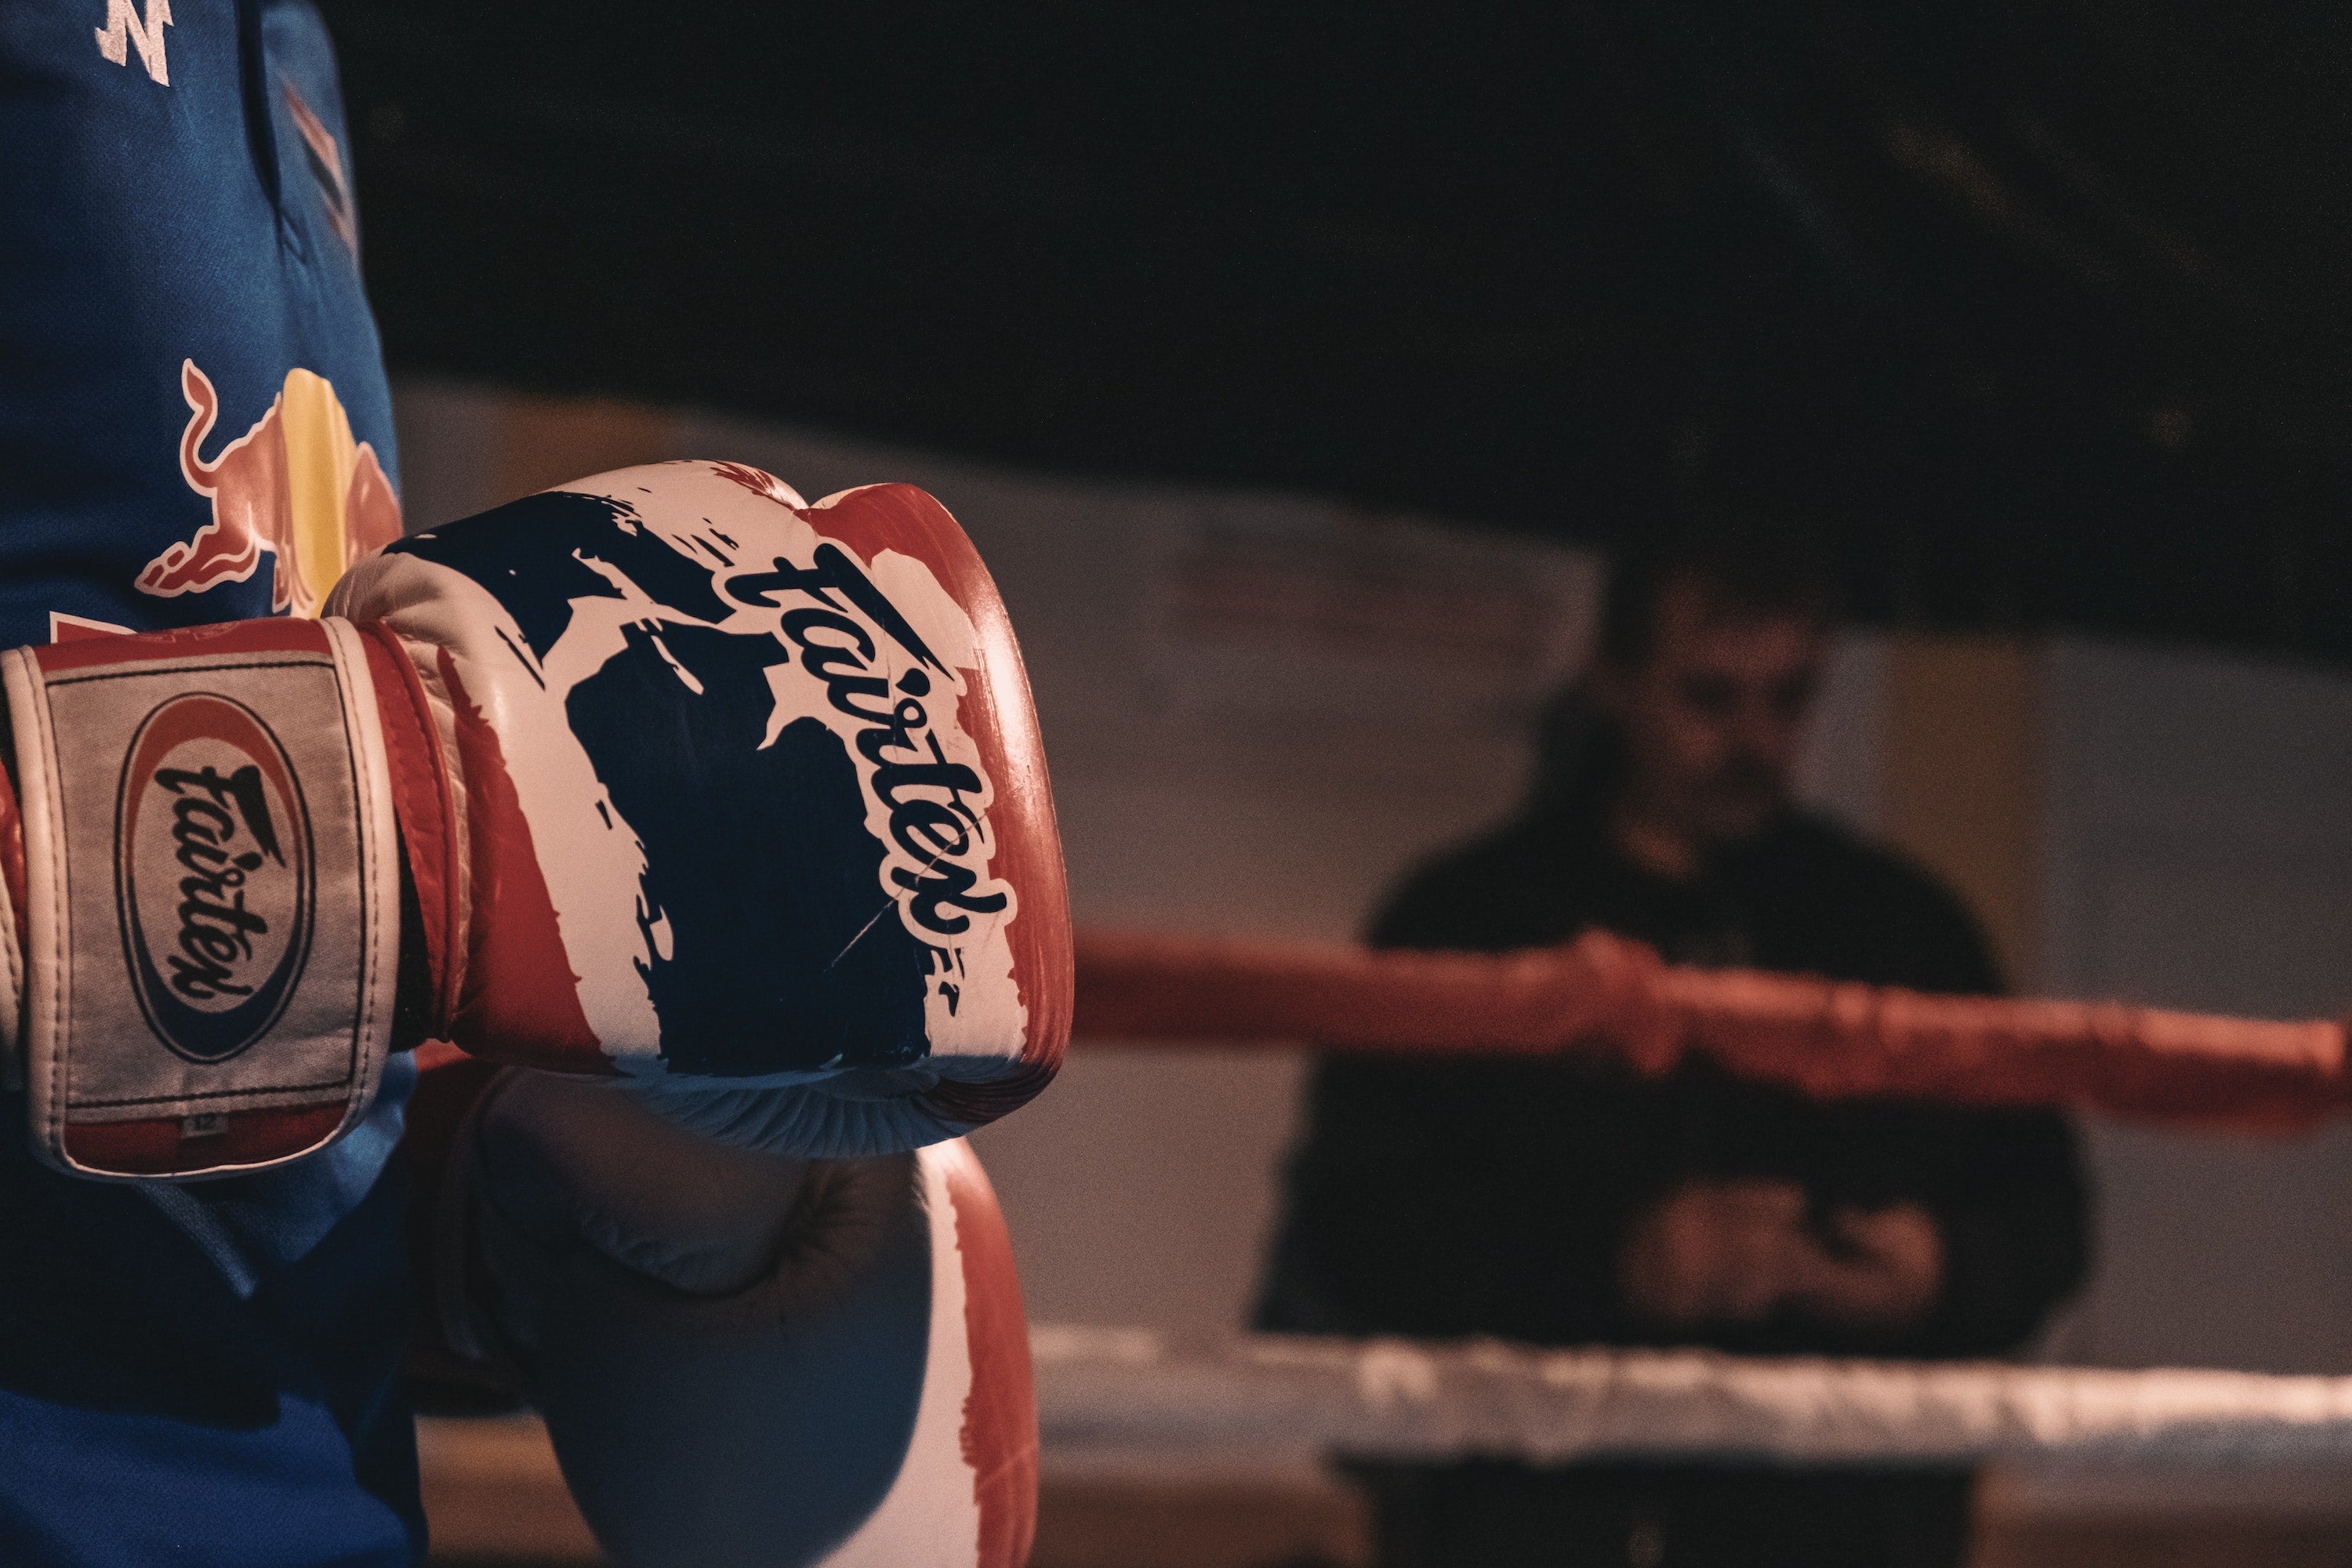 ¿Buscas guantes nuevos? Guía completa sobre guantes de boxeo